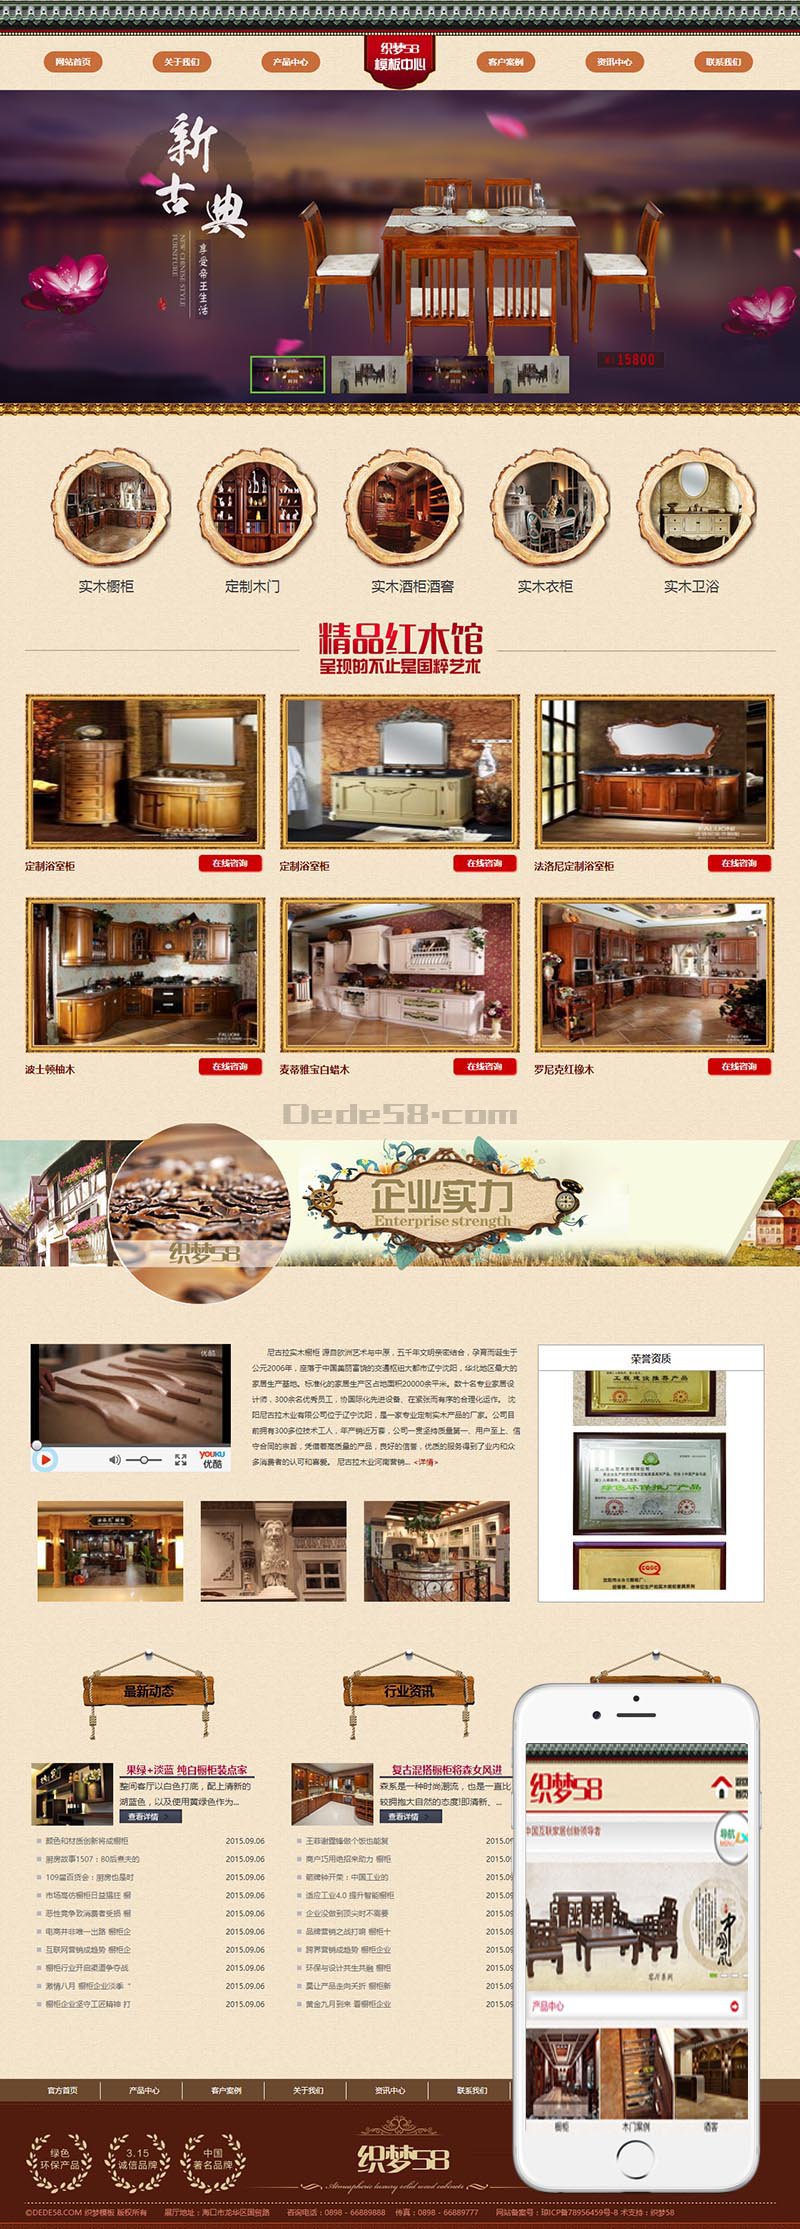 织梦简洁家居家具厨房橱柜用品企业网站织梦dedecms模板(带手机端)